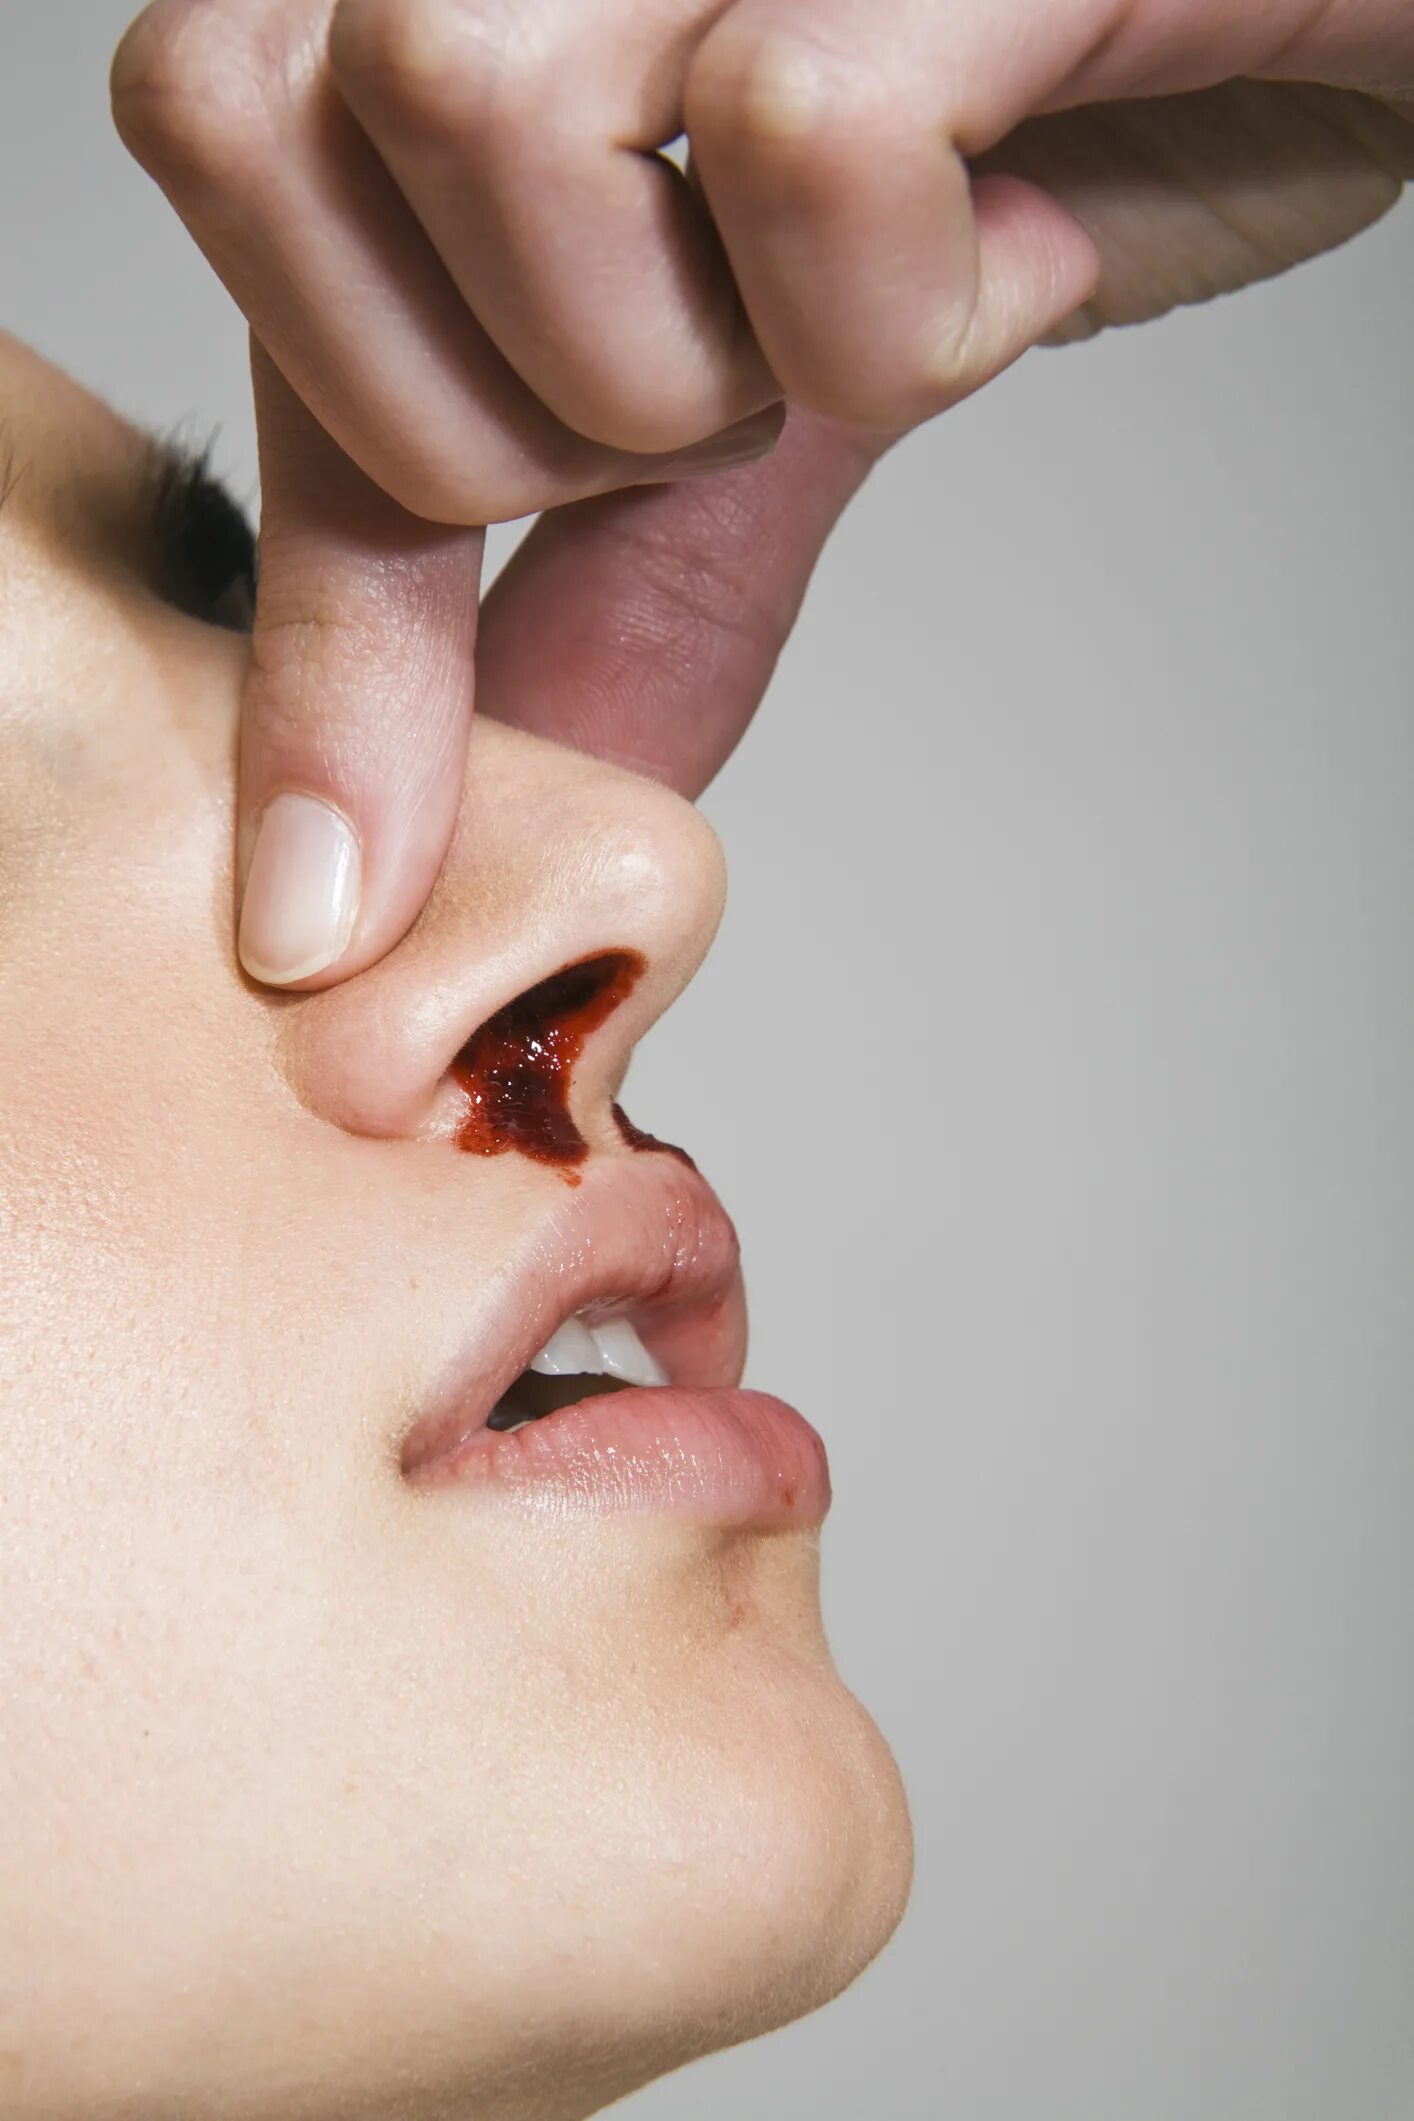 Что означает кровь во рту. Нососовое кровотечение. Эпистаксис – носовое кровотечение..